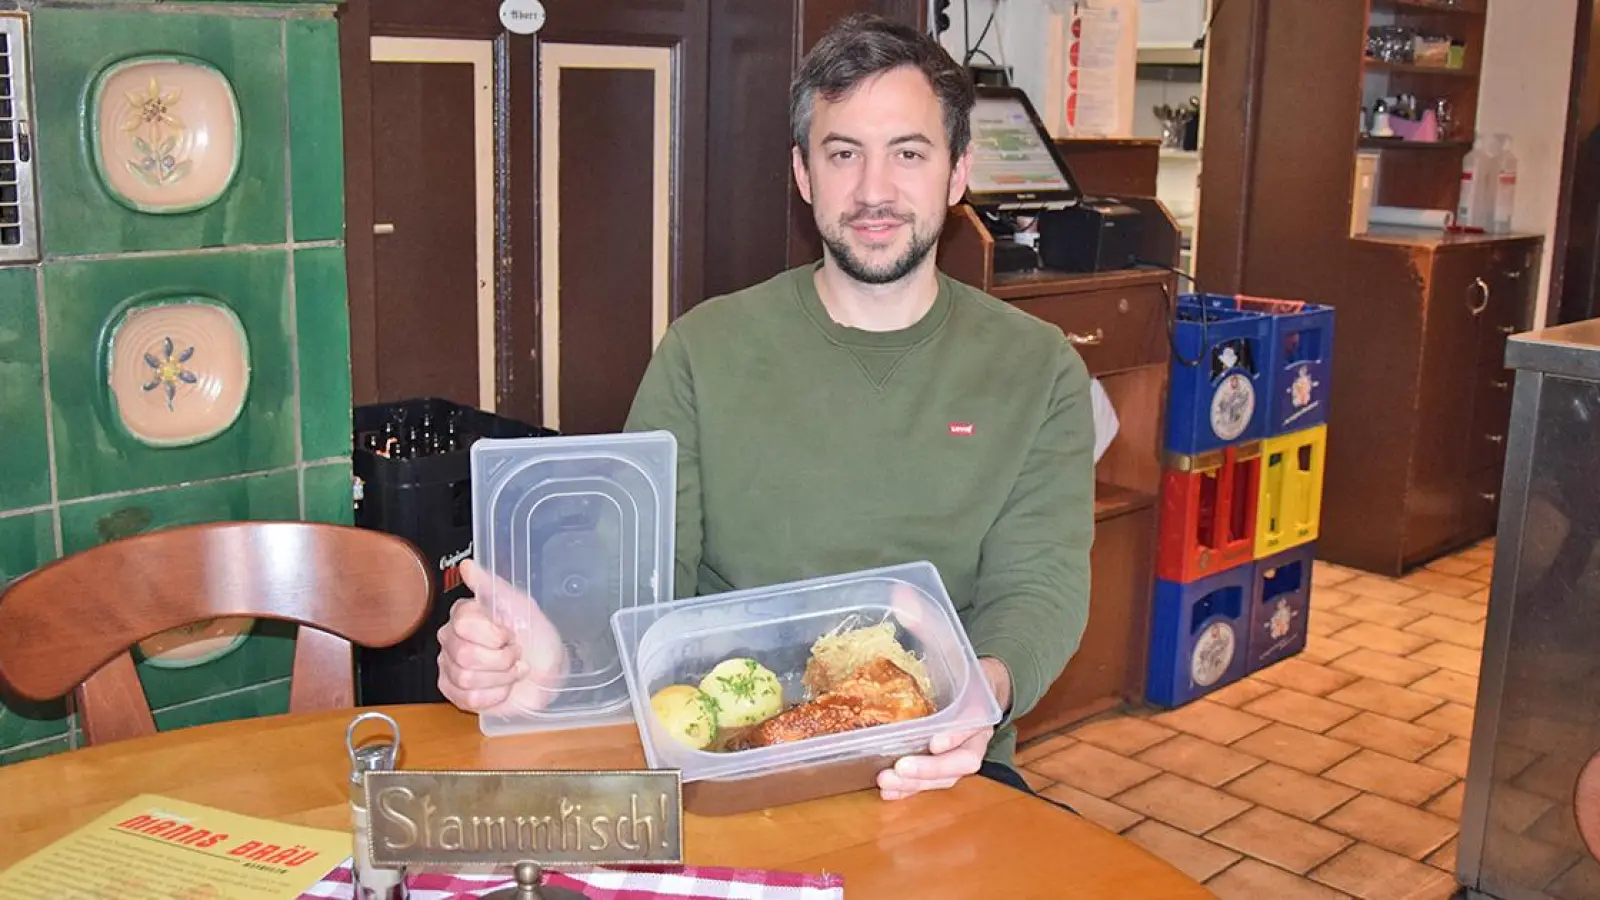 Christian Hacker vom Manns Bräu in Bayreuth bietet zwei verschiedene Mehrwegsysteme für Essen zum Mitnehmen an. (Foto: Lenkeit)